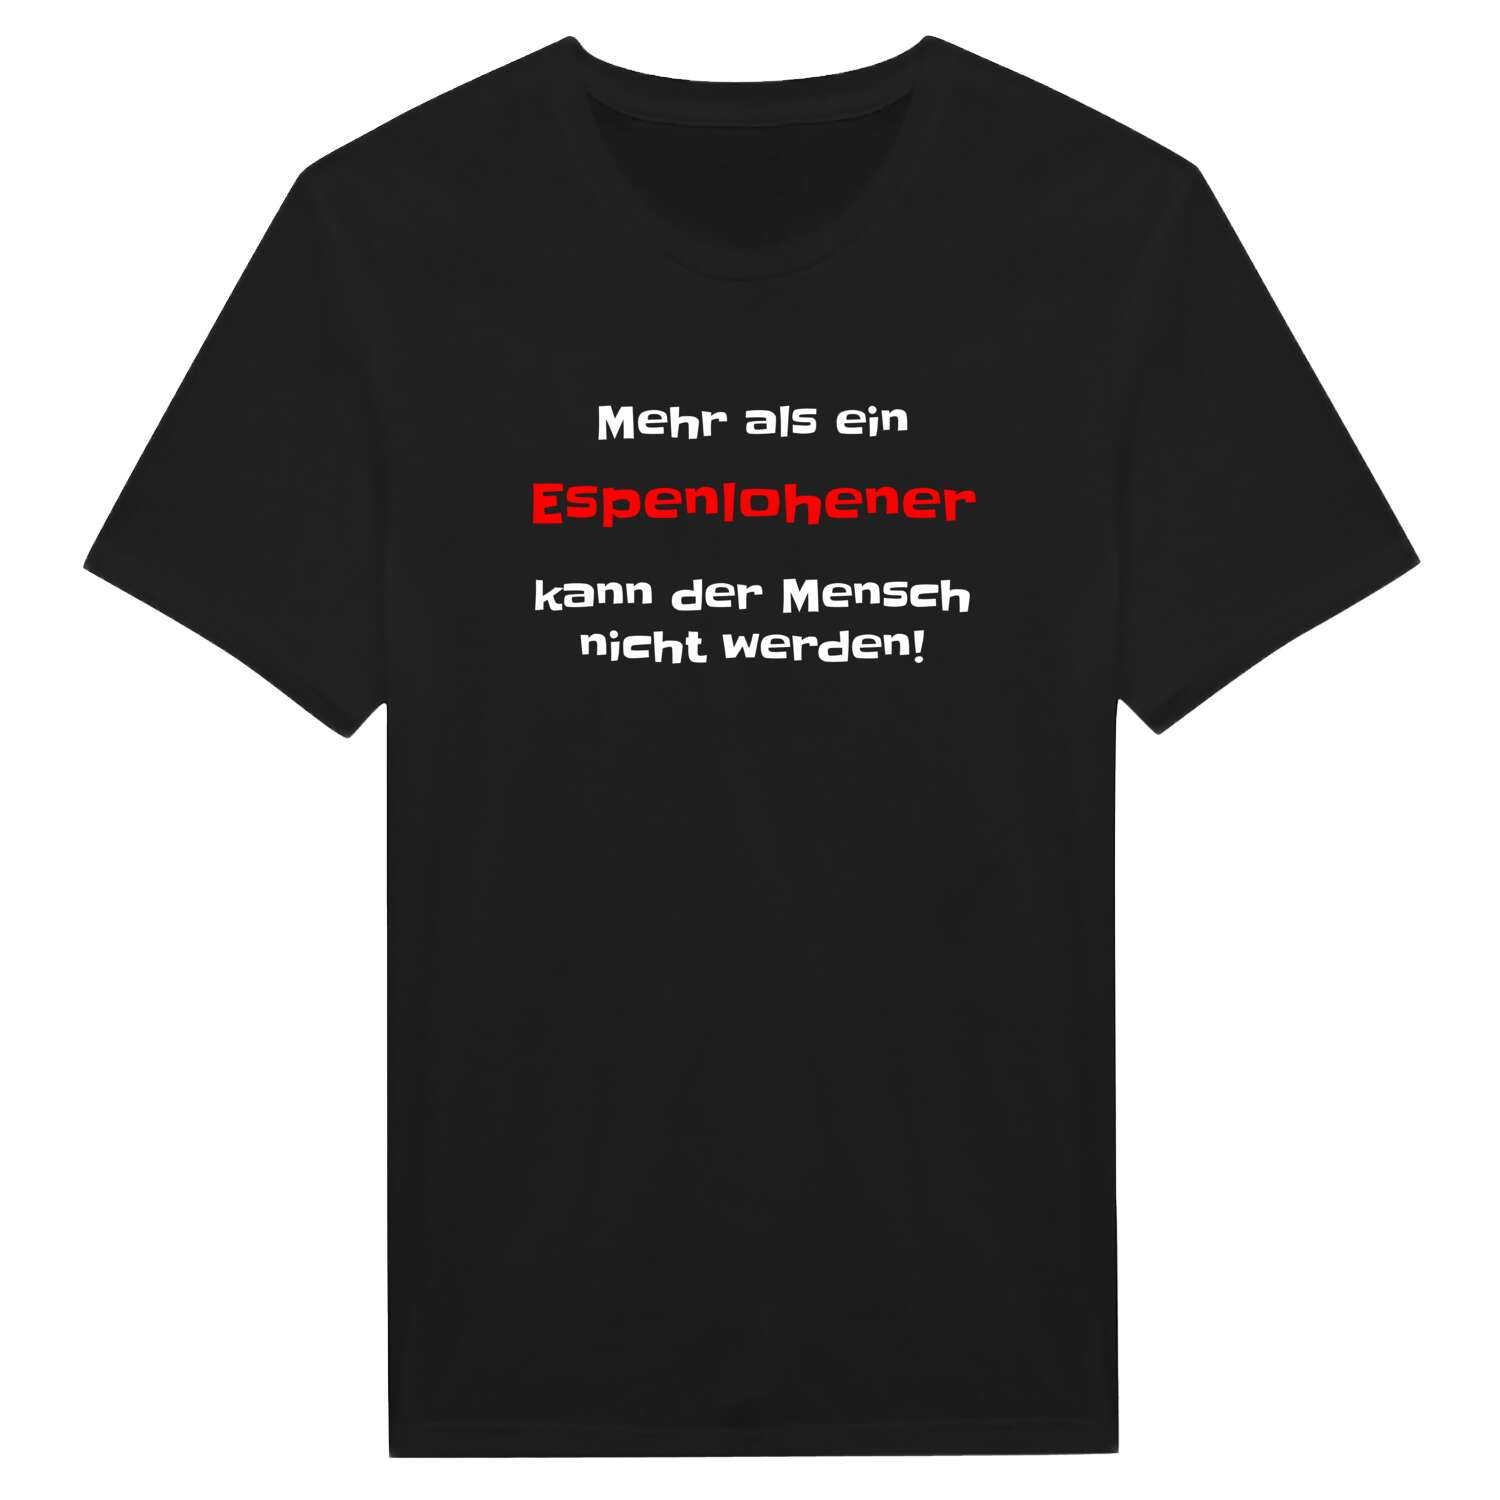 Espenlohe T-Shirt »Mehr als ein«